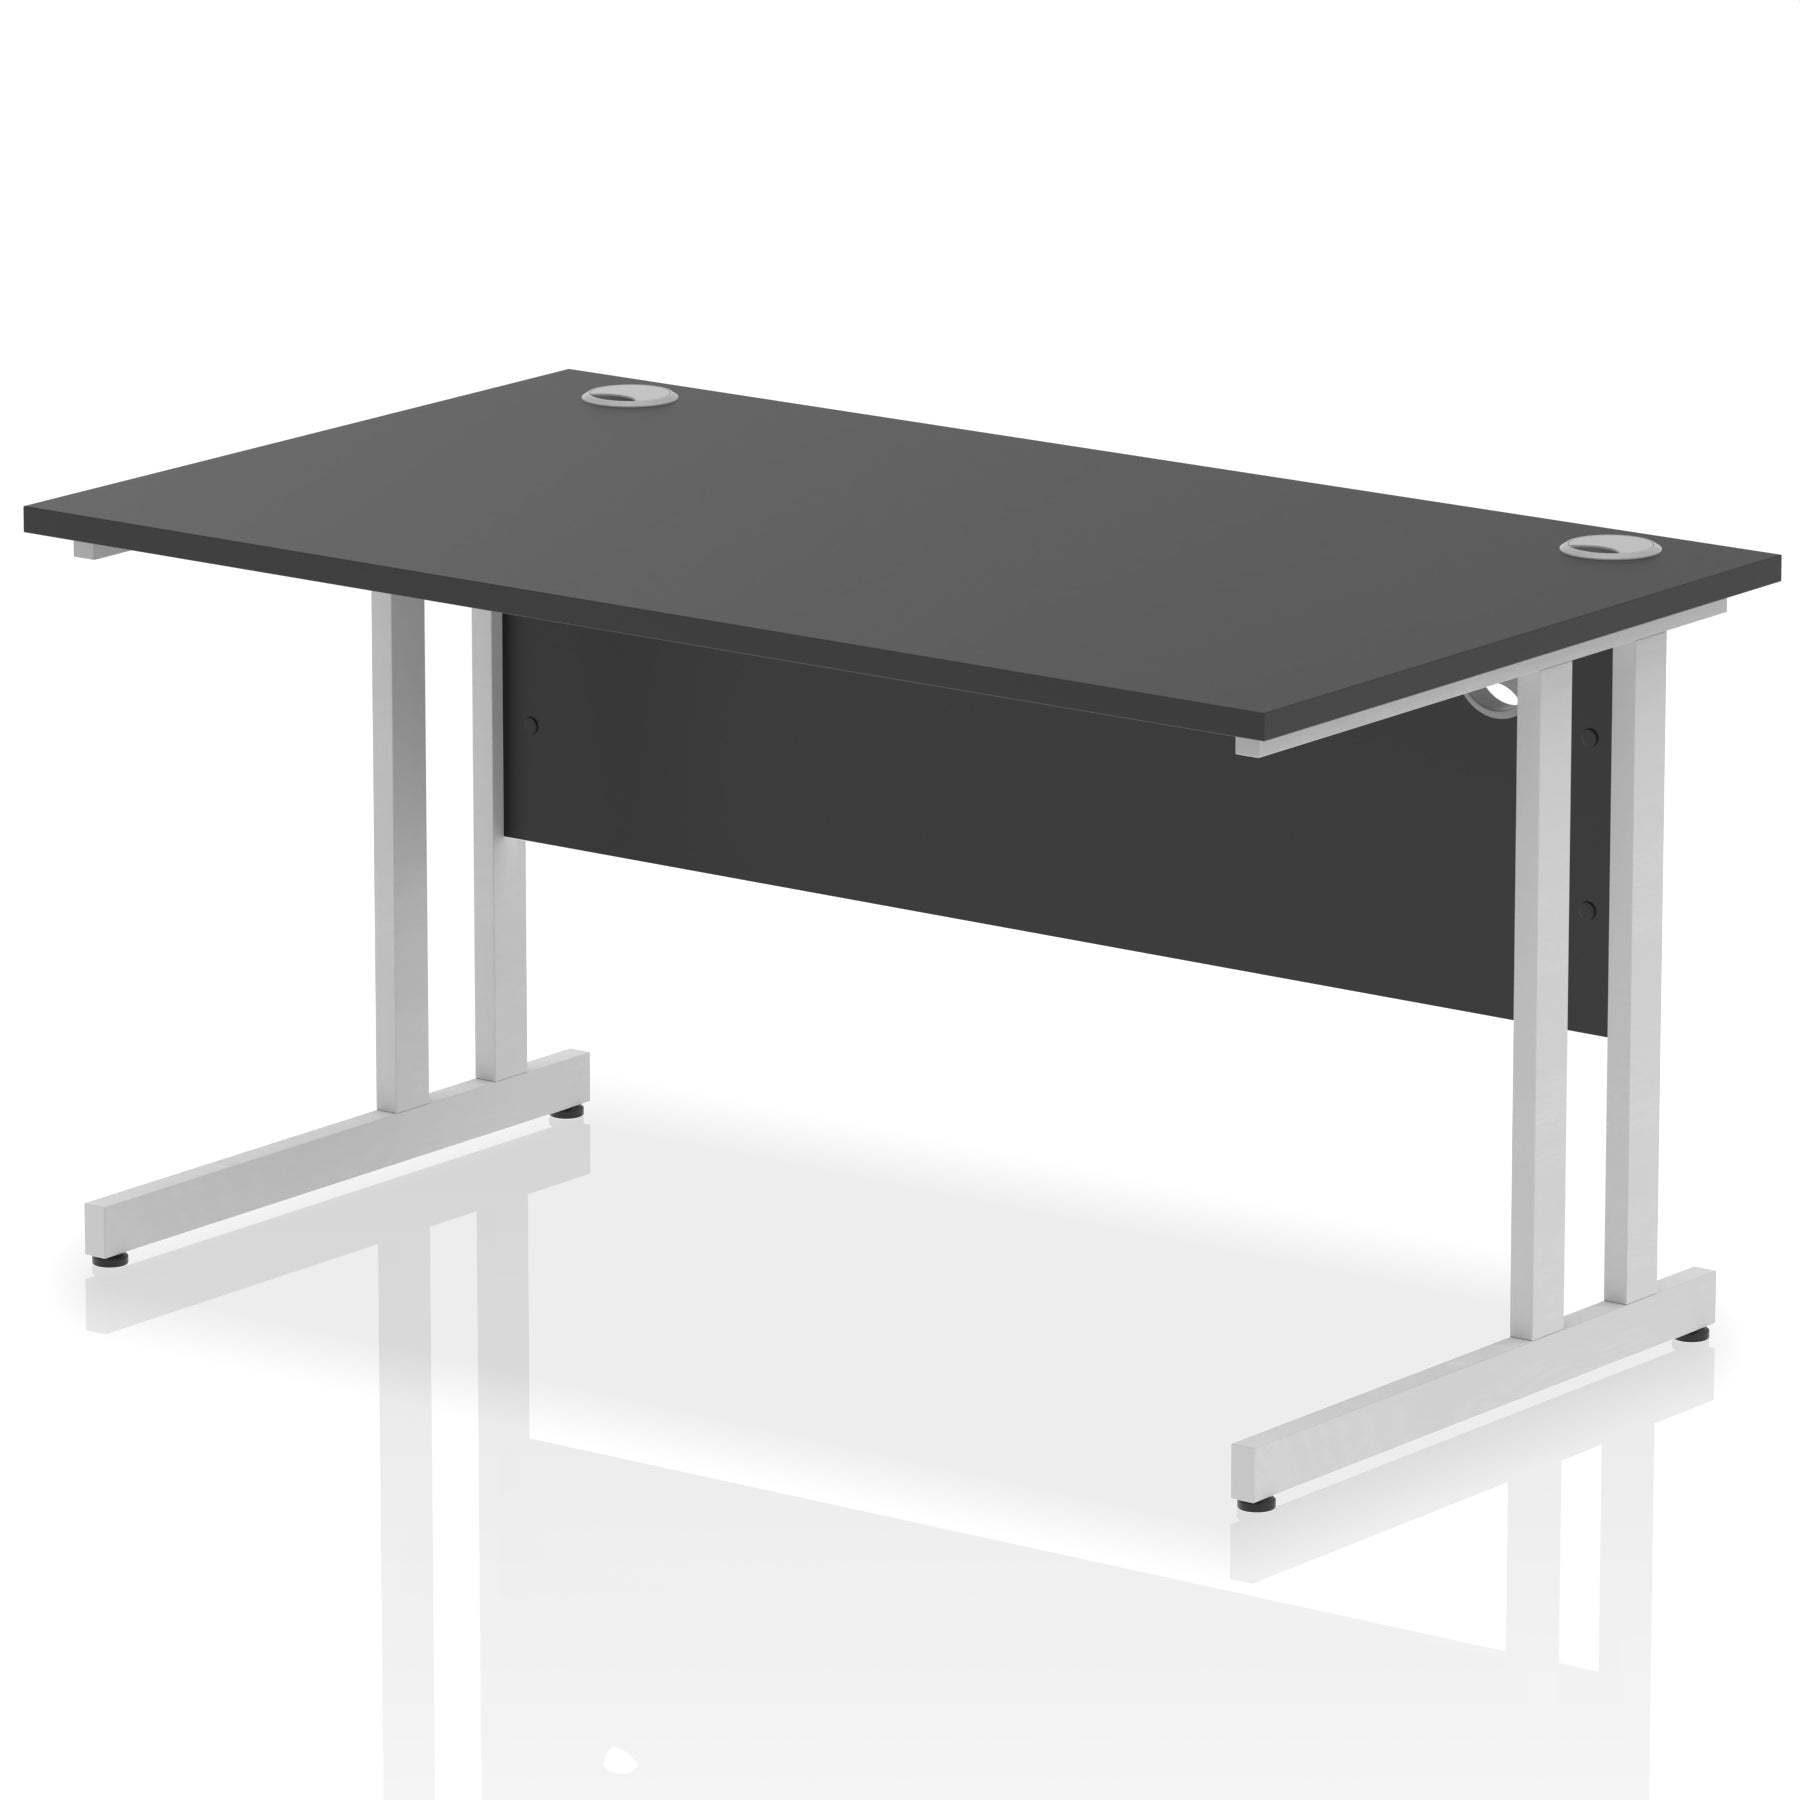 Impulse 1400mm Straight Desk Cantilever Leg